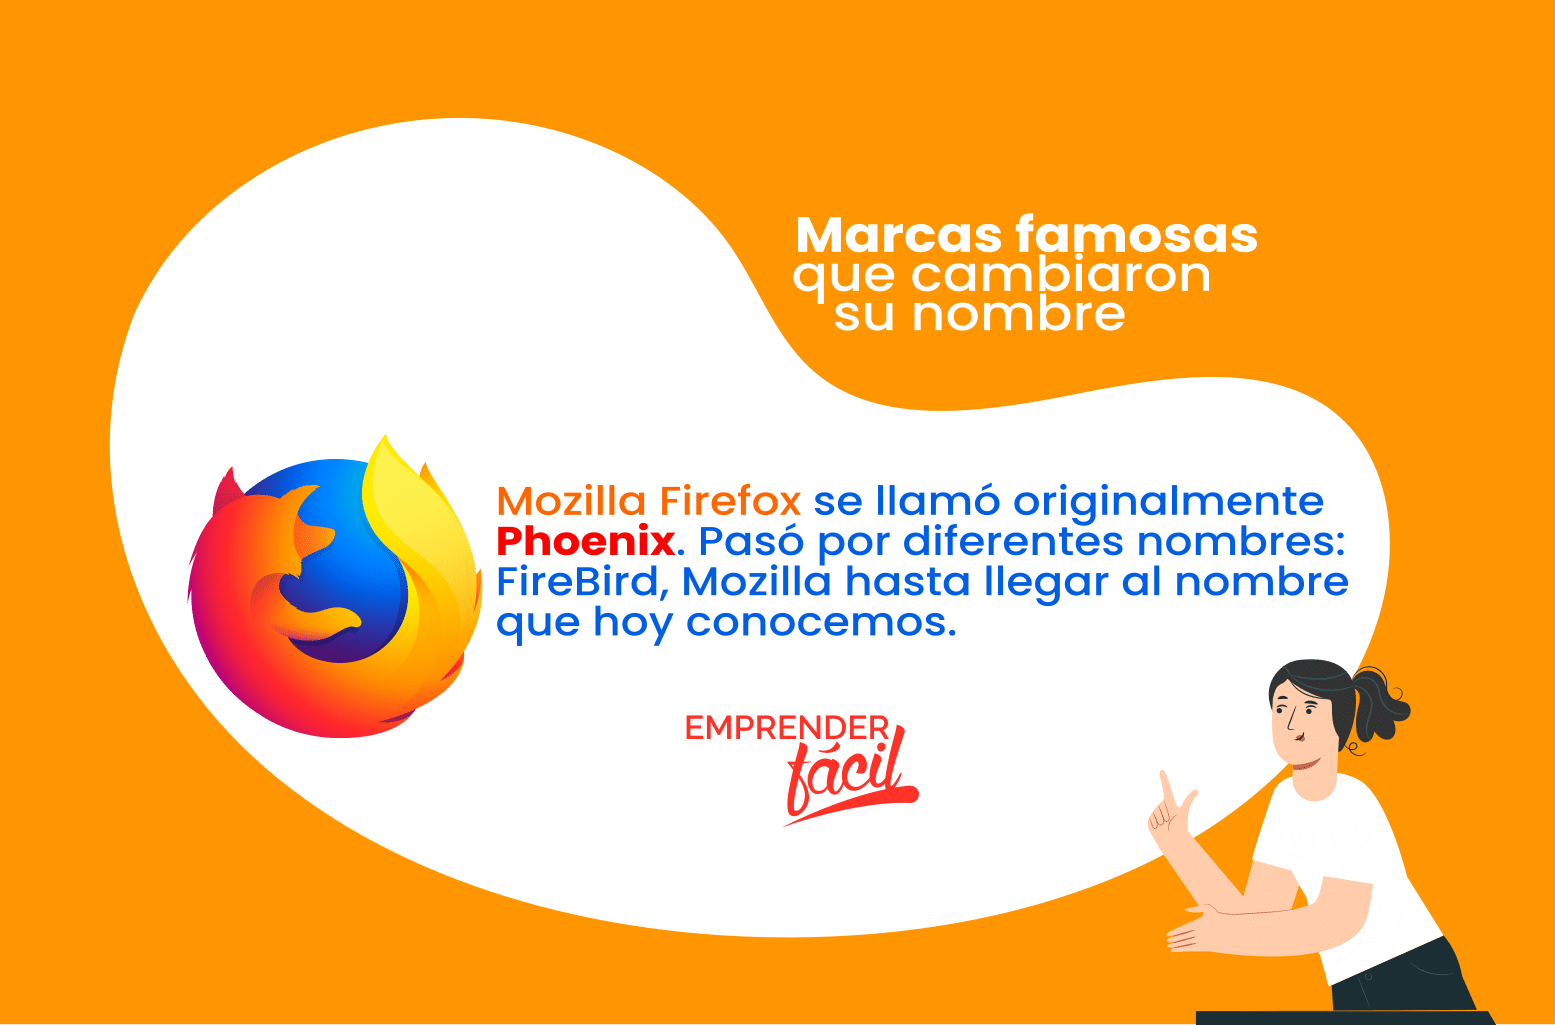 Marcas famosas que cambiaron su nombre caso Firefox